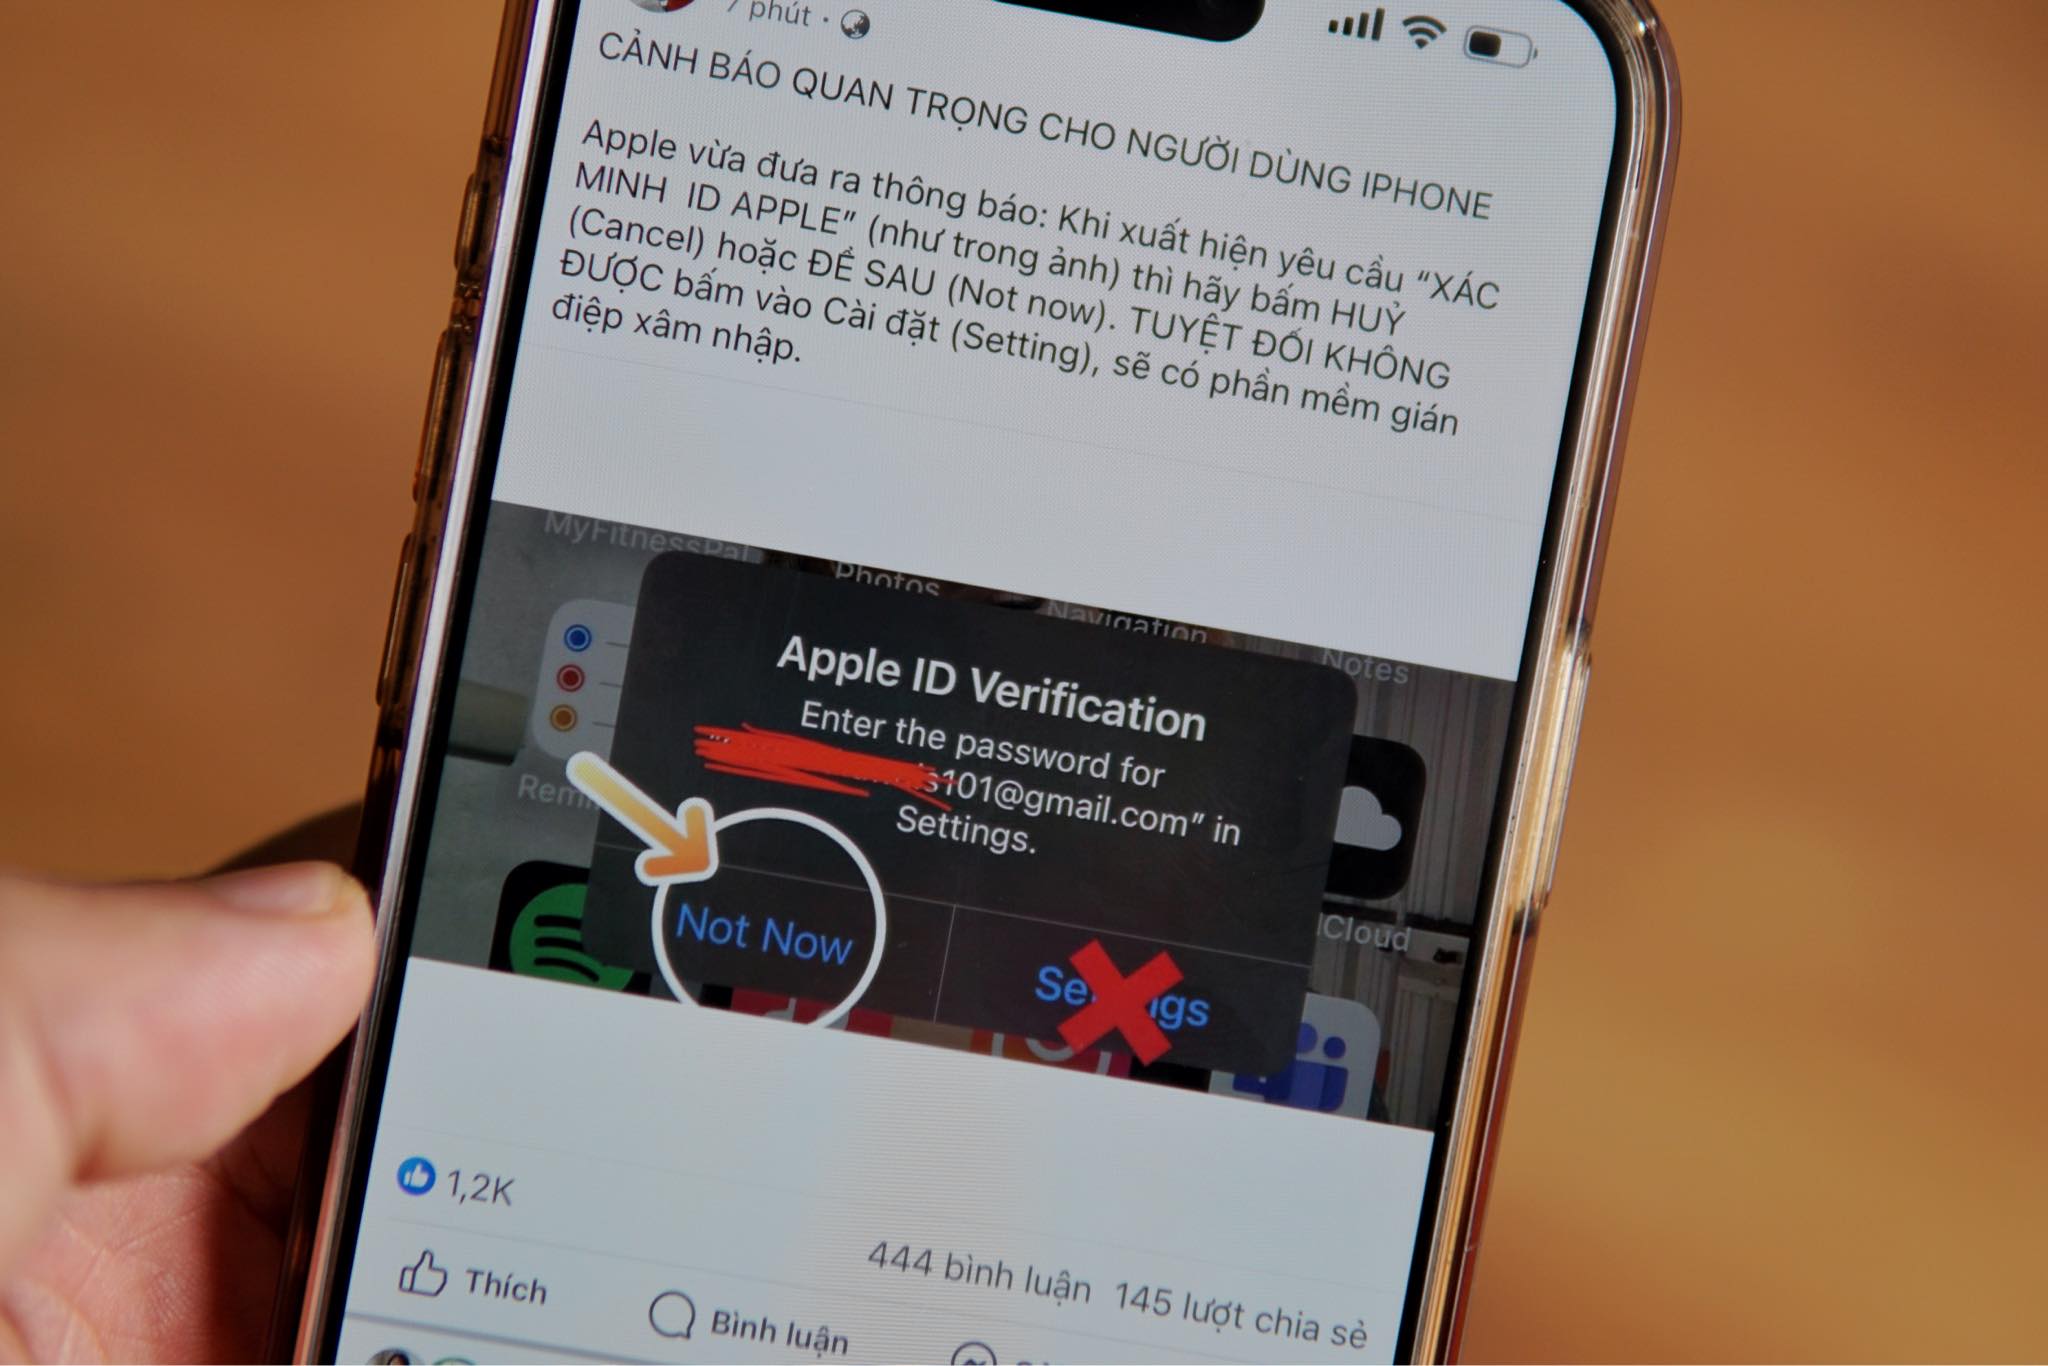 Một bài đăng cảnh báo về nguy cơ bị tấn công khi xác minh Apple ID, nhưng chuyên gia cho rằng đó là tin giả. Ảnh: Lưu Quý